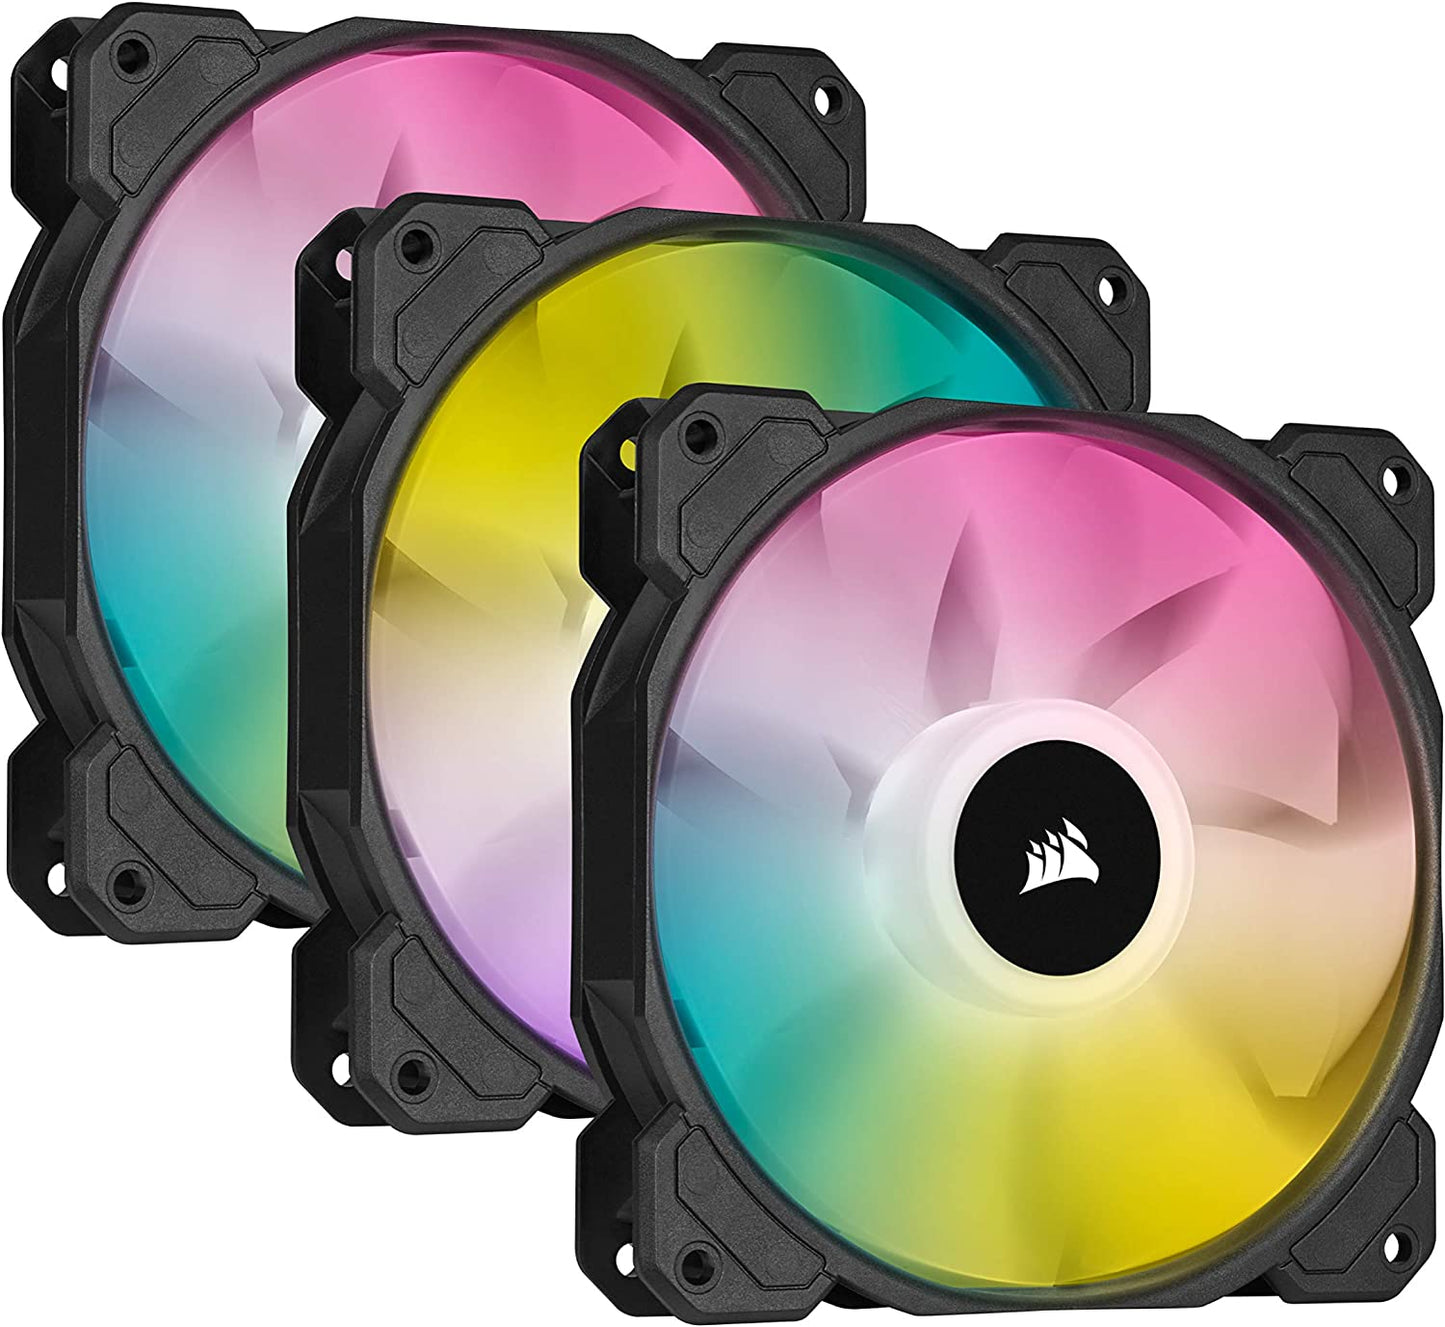 Corsair iCUE SP120 RGB Fan Kit: 3x120mm PWM RGB Case Fans w/ fan hub - FAC-SP120RGB